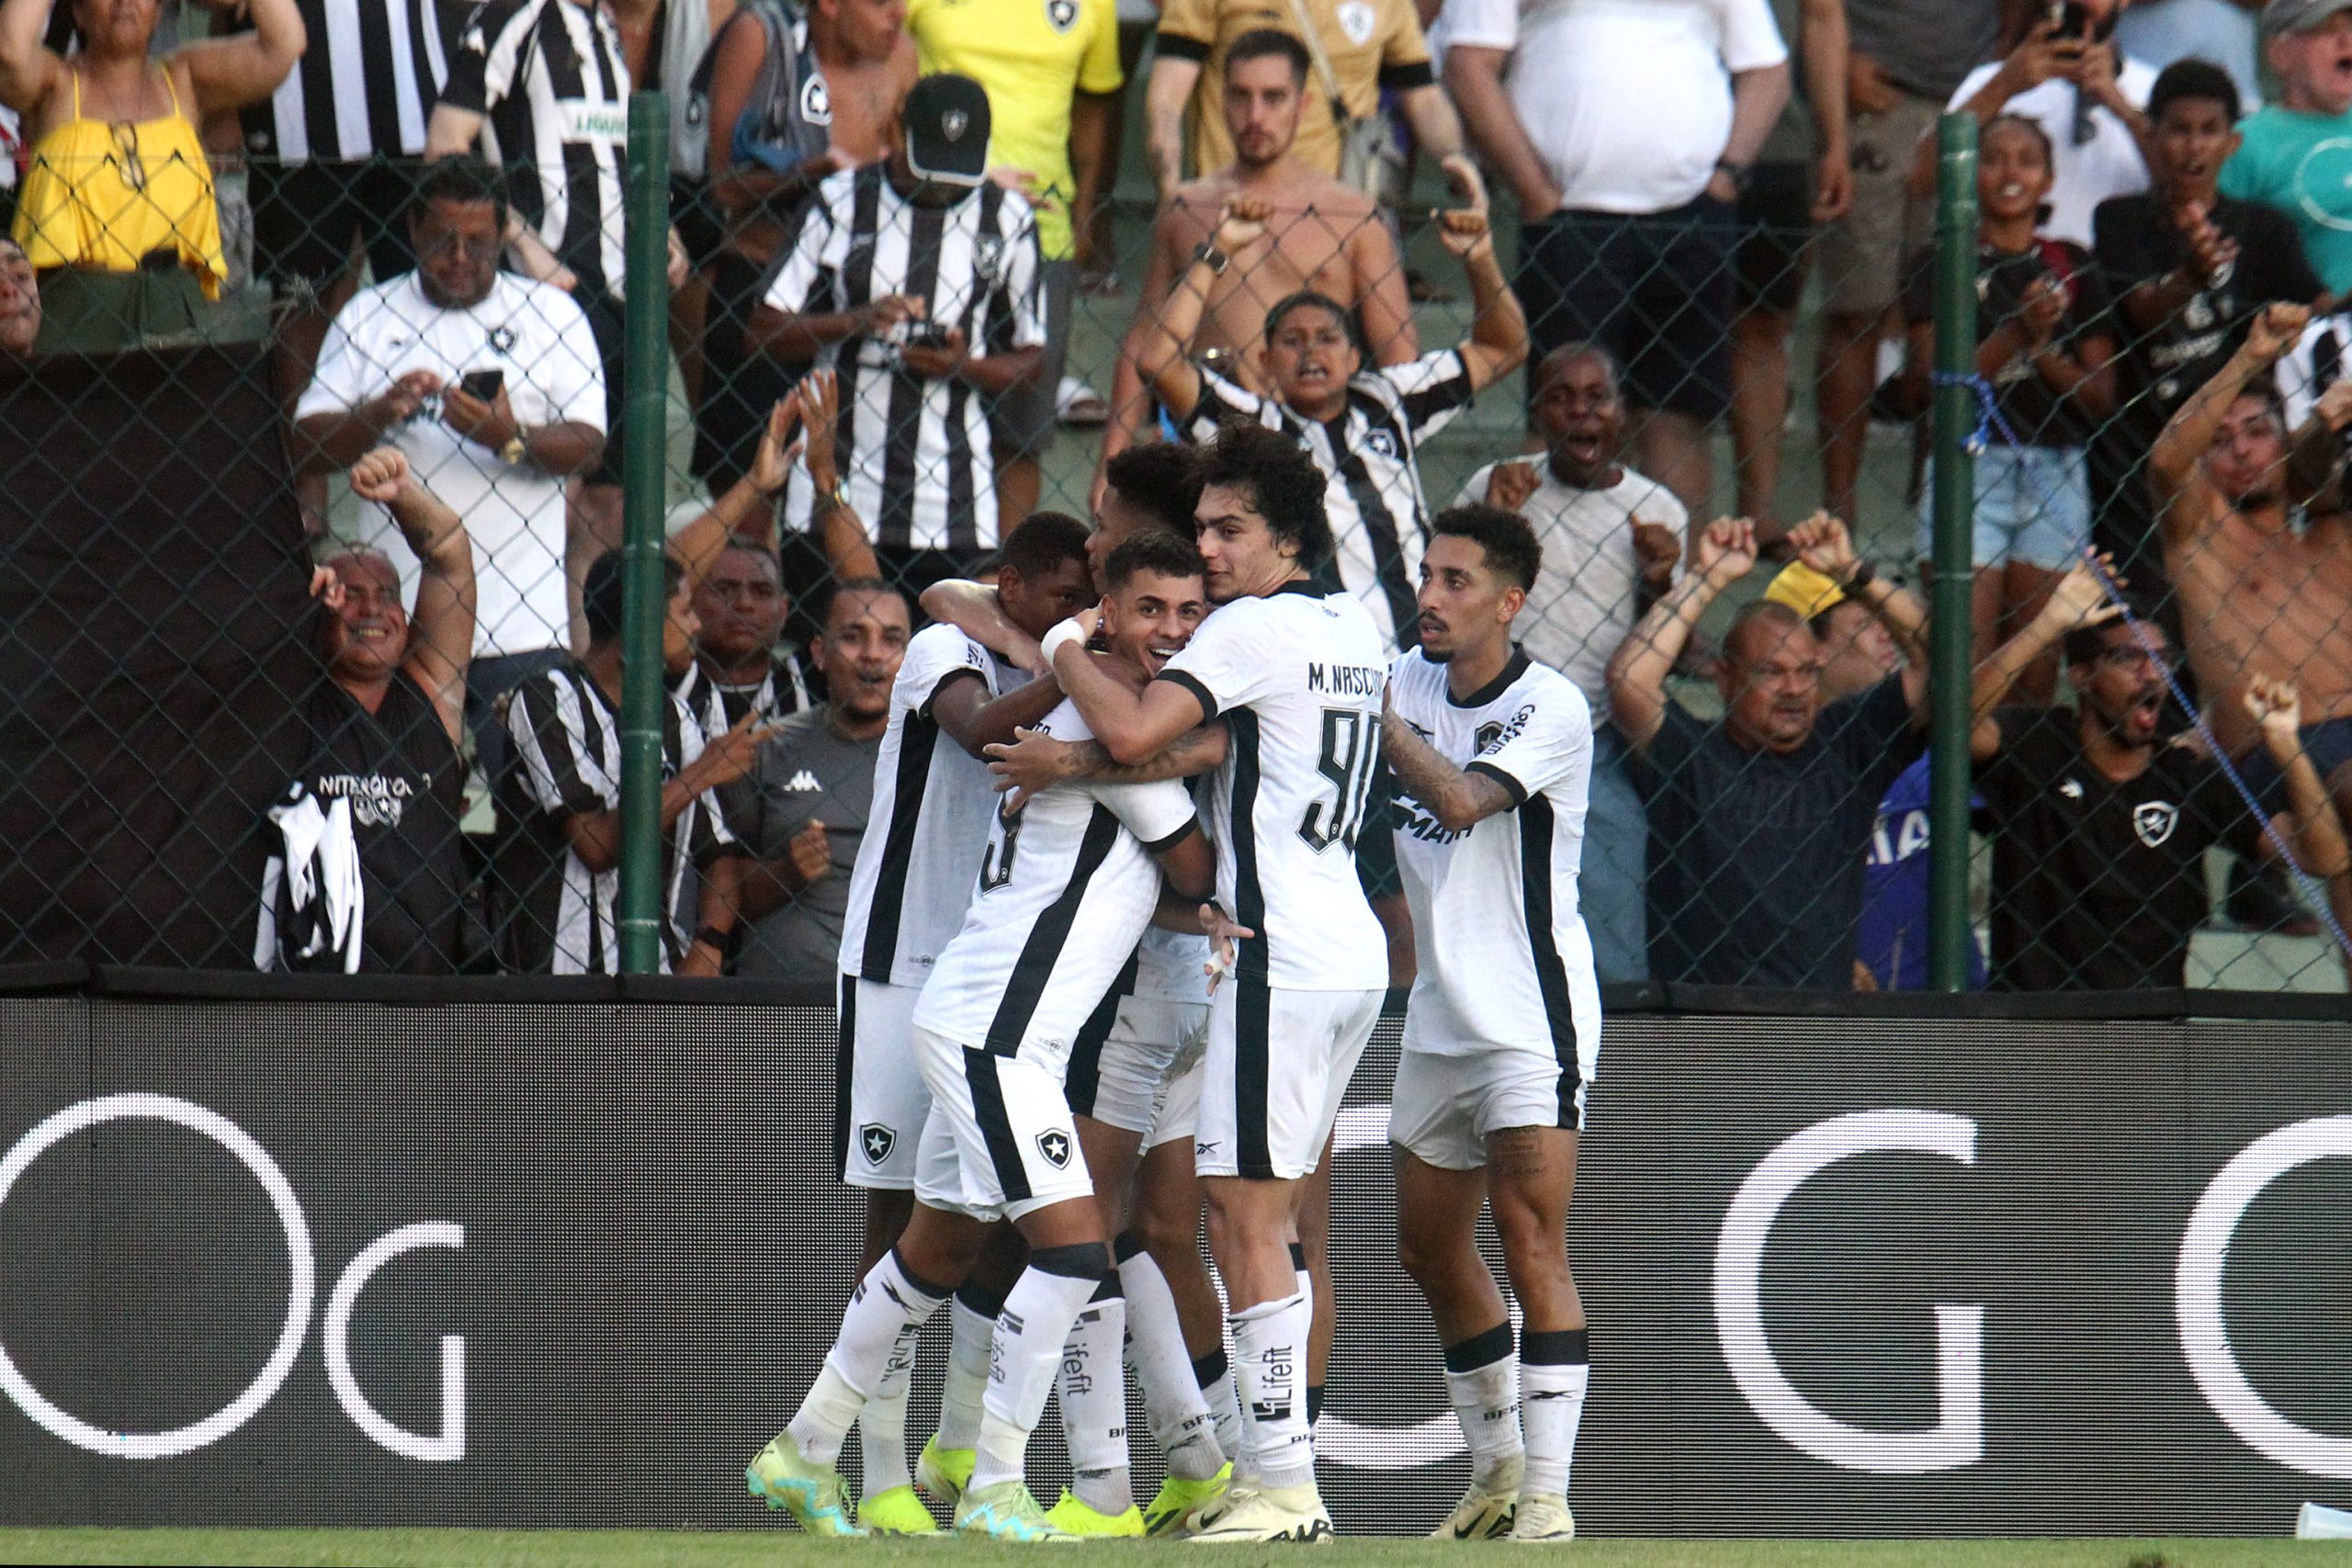 Jogadores do Botafogo comemorando um dos gols. (Foto: Vitor Silva/Botafogo)